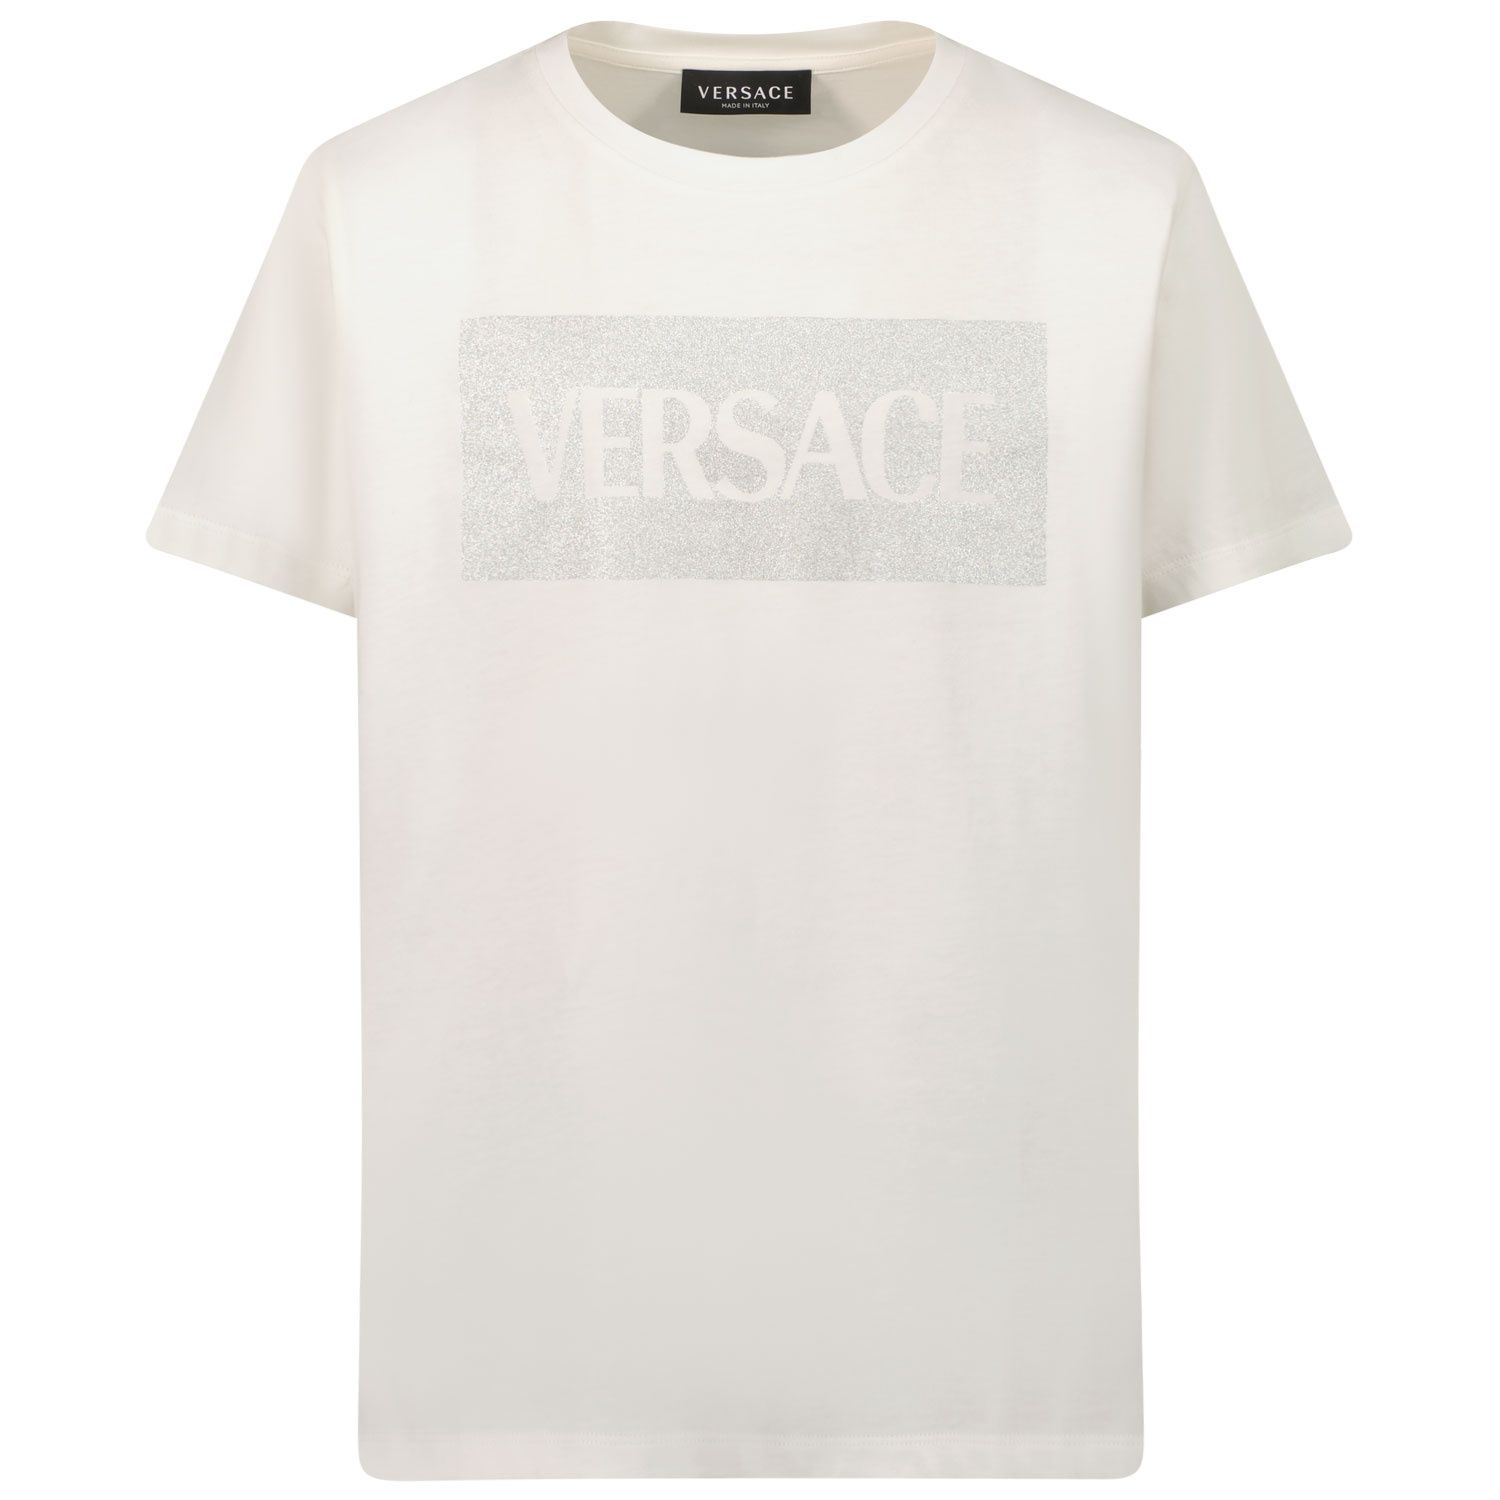 Bild von Versace 1000052 1A1343 Kindershirt Weiß